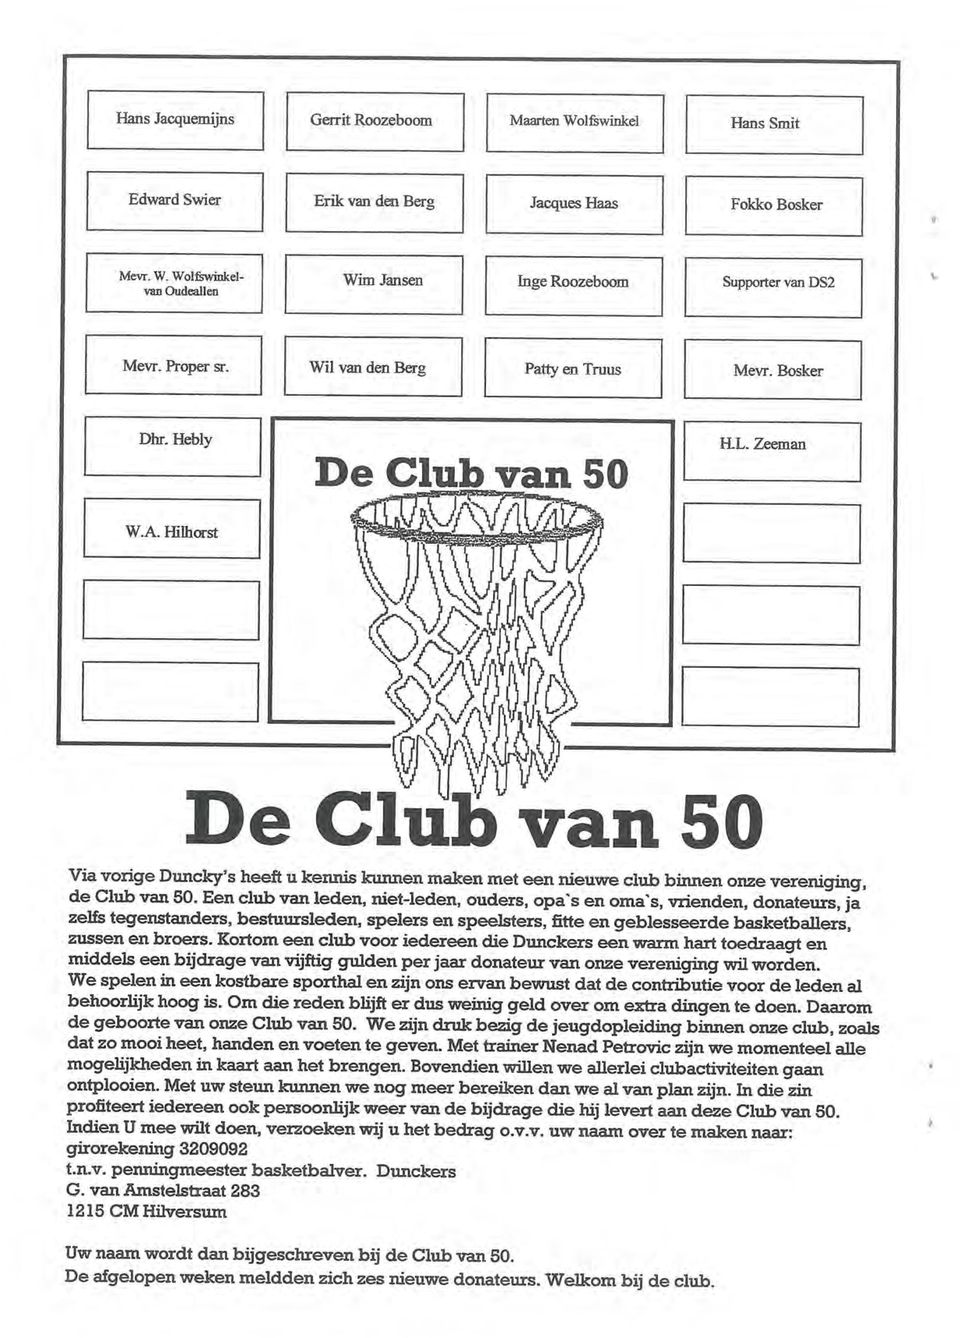 Hilhorst \,)S De Club van 50 Via vorige Duncky's heeft u kennis kunnen maken met een nieuwe club binnen onze vereniging, de Club van 50.